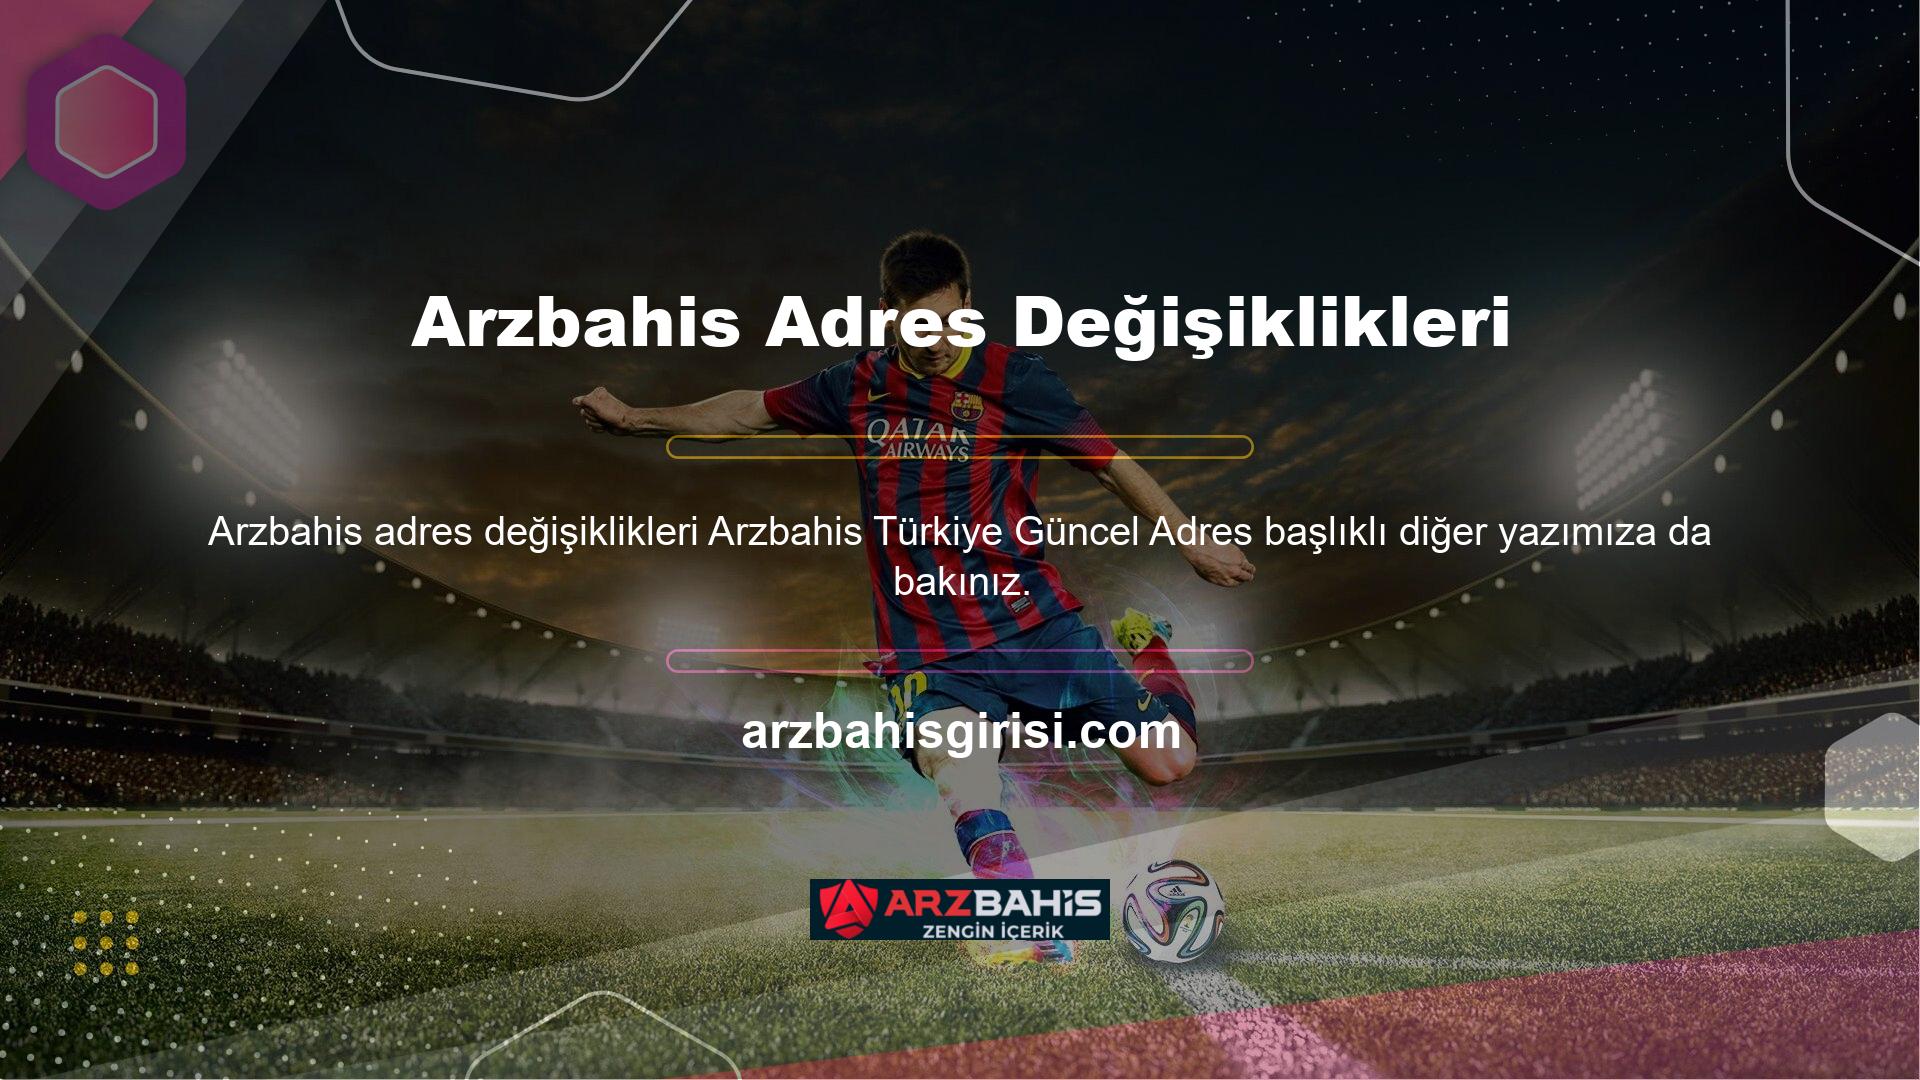 Bahis tutkunlarının yakından tanıdığı Arzbahis Türkiye Güncel Adres online bahis platformuna üye değilseniz daha fazla beklemeyin